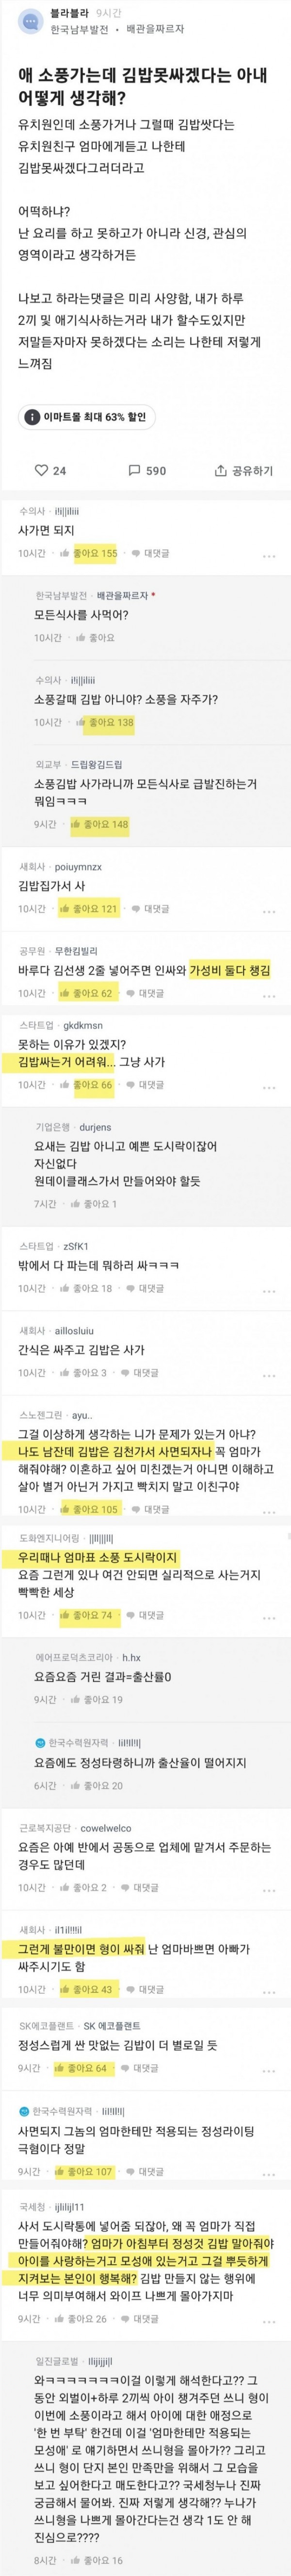 자기 자식 김밥 싸주기 싫어 분노하는 한국여성들